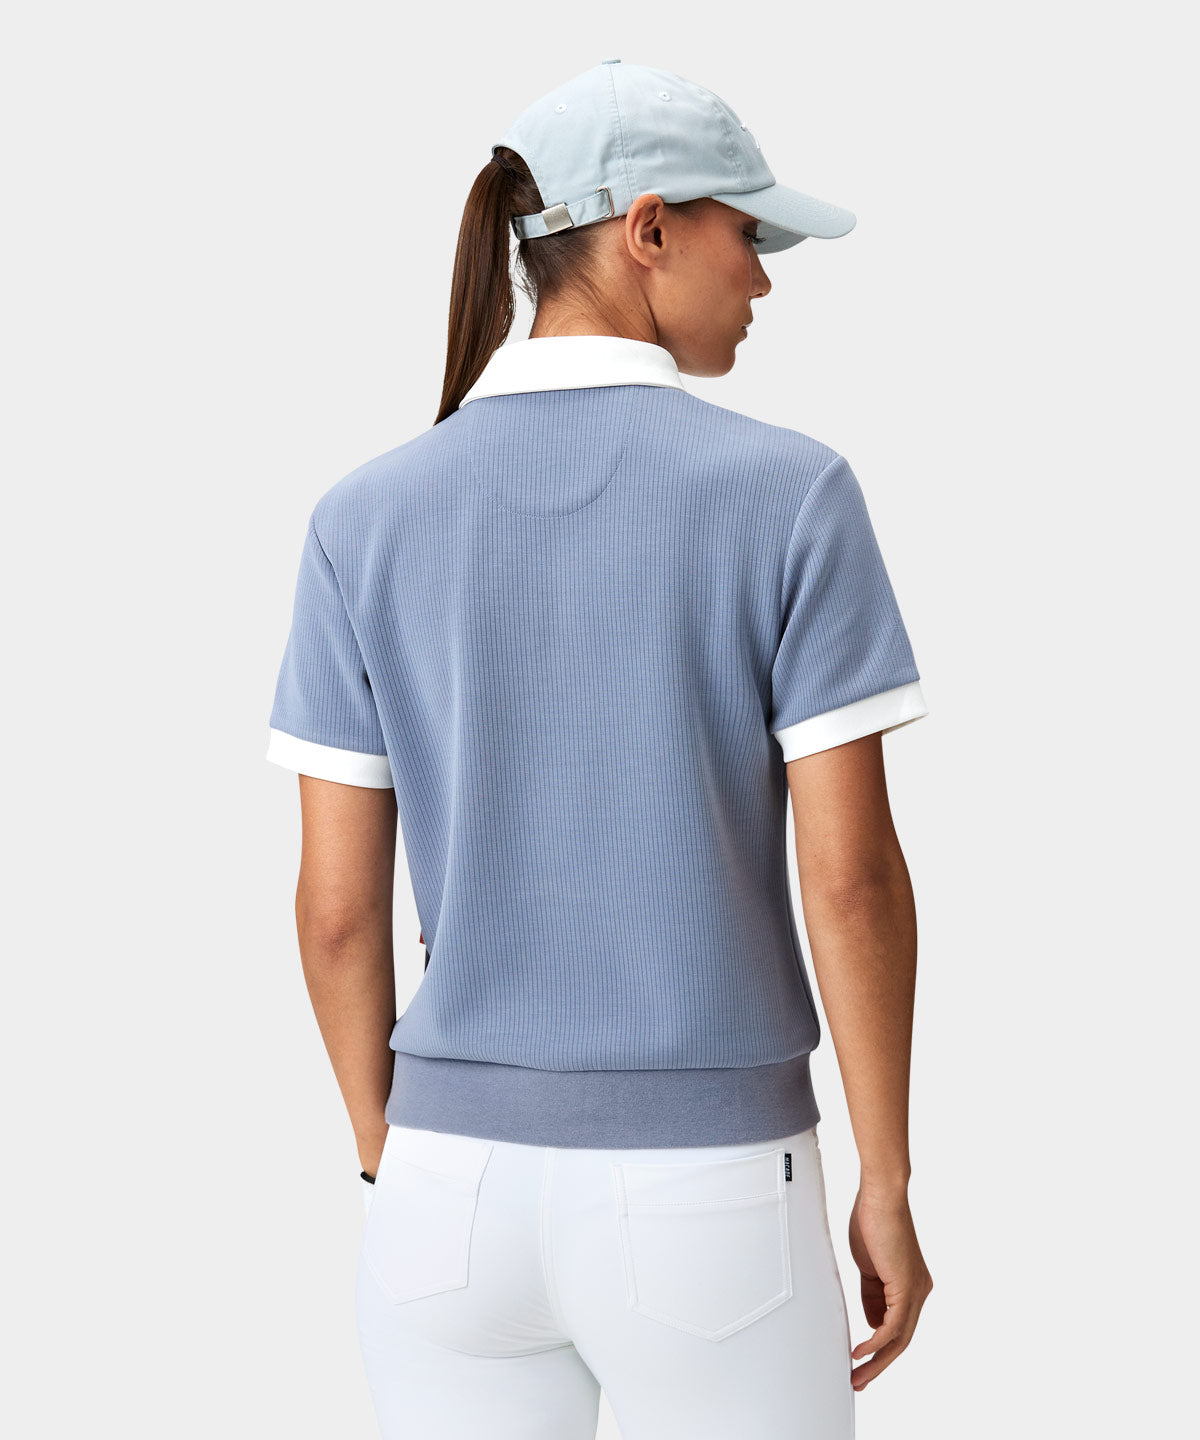 Gray Tech Range Polo Shirt